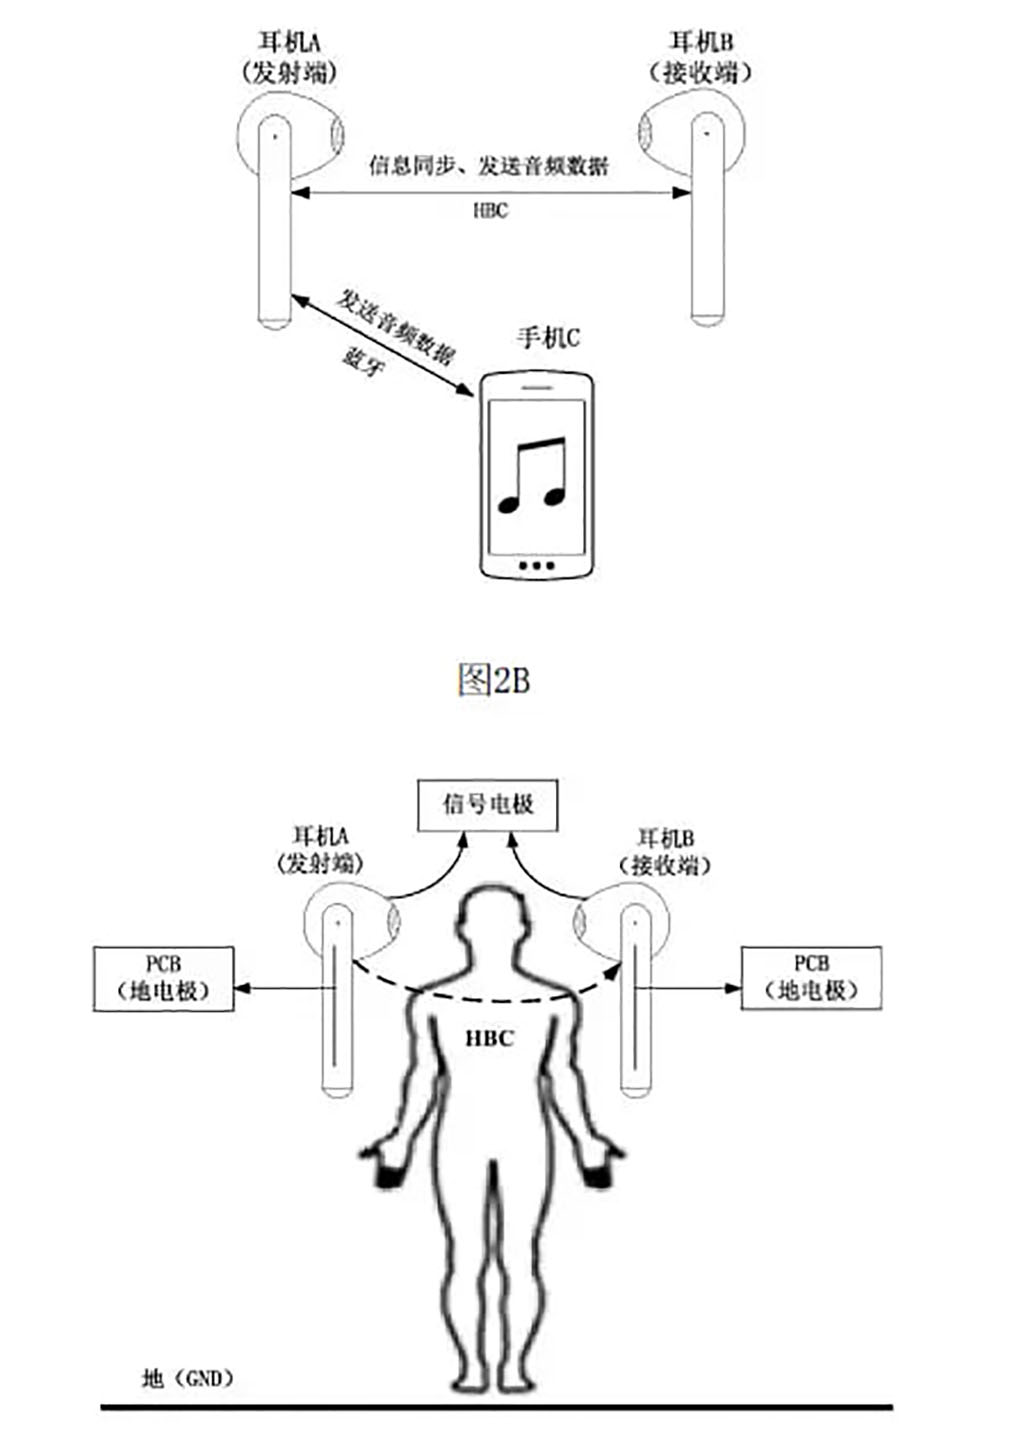 Huawei patent human body communication